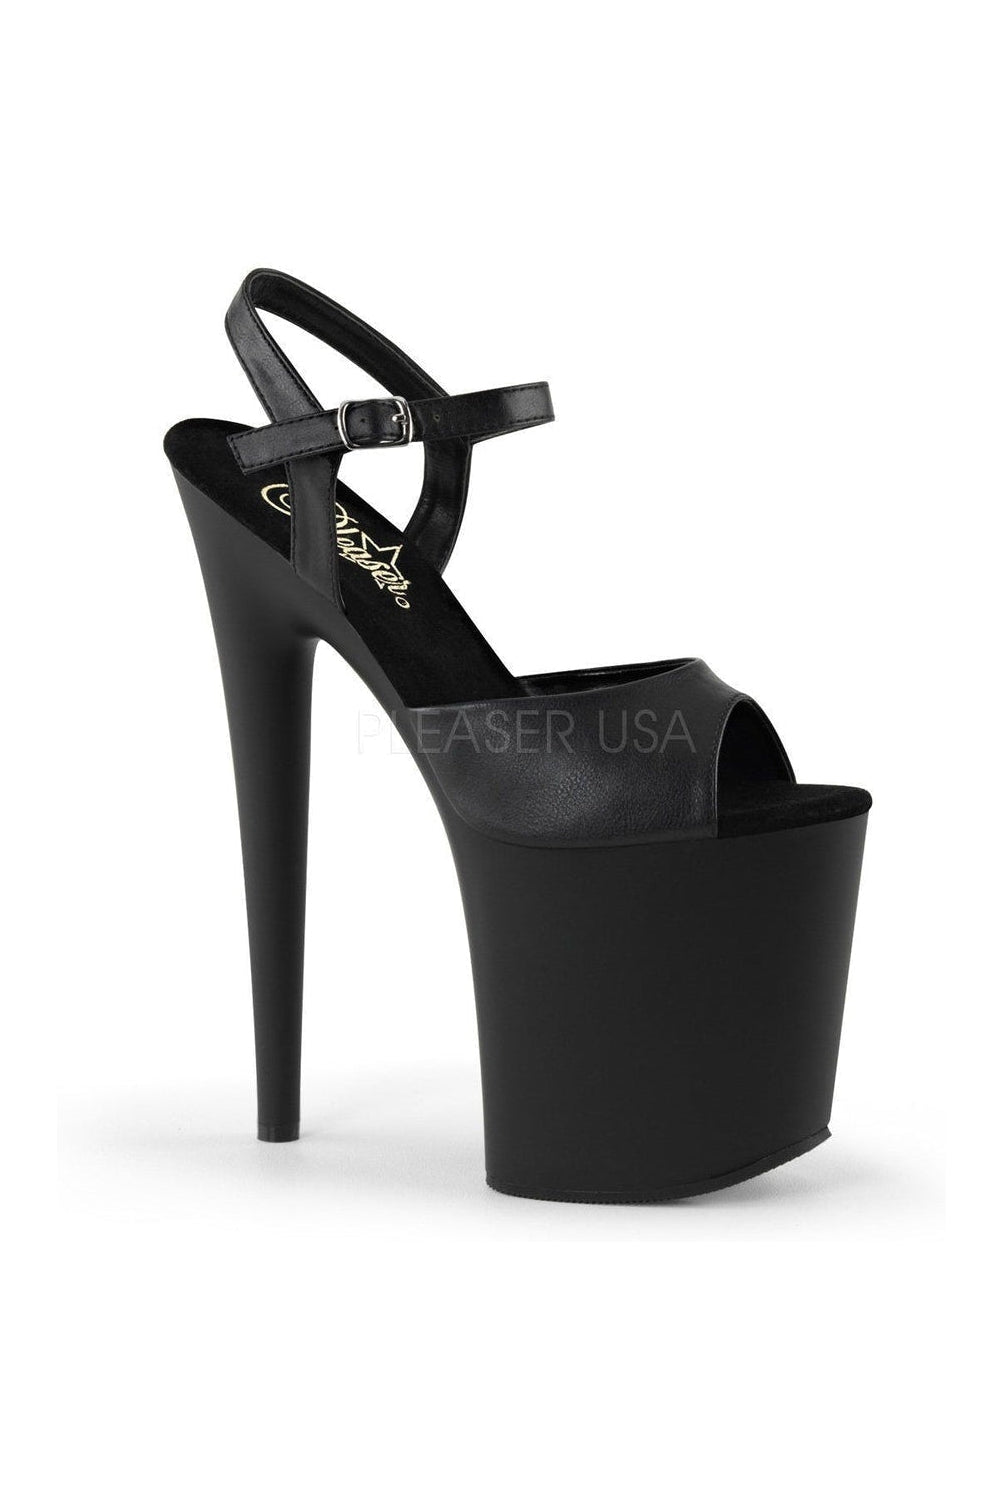 FLAMINGO-809 Platform Sandal | Black Faux Leather-Pleaser-Black-Sandals-SEXYSHOES.COM